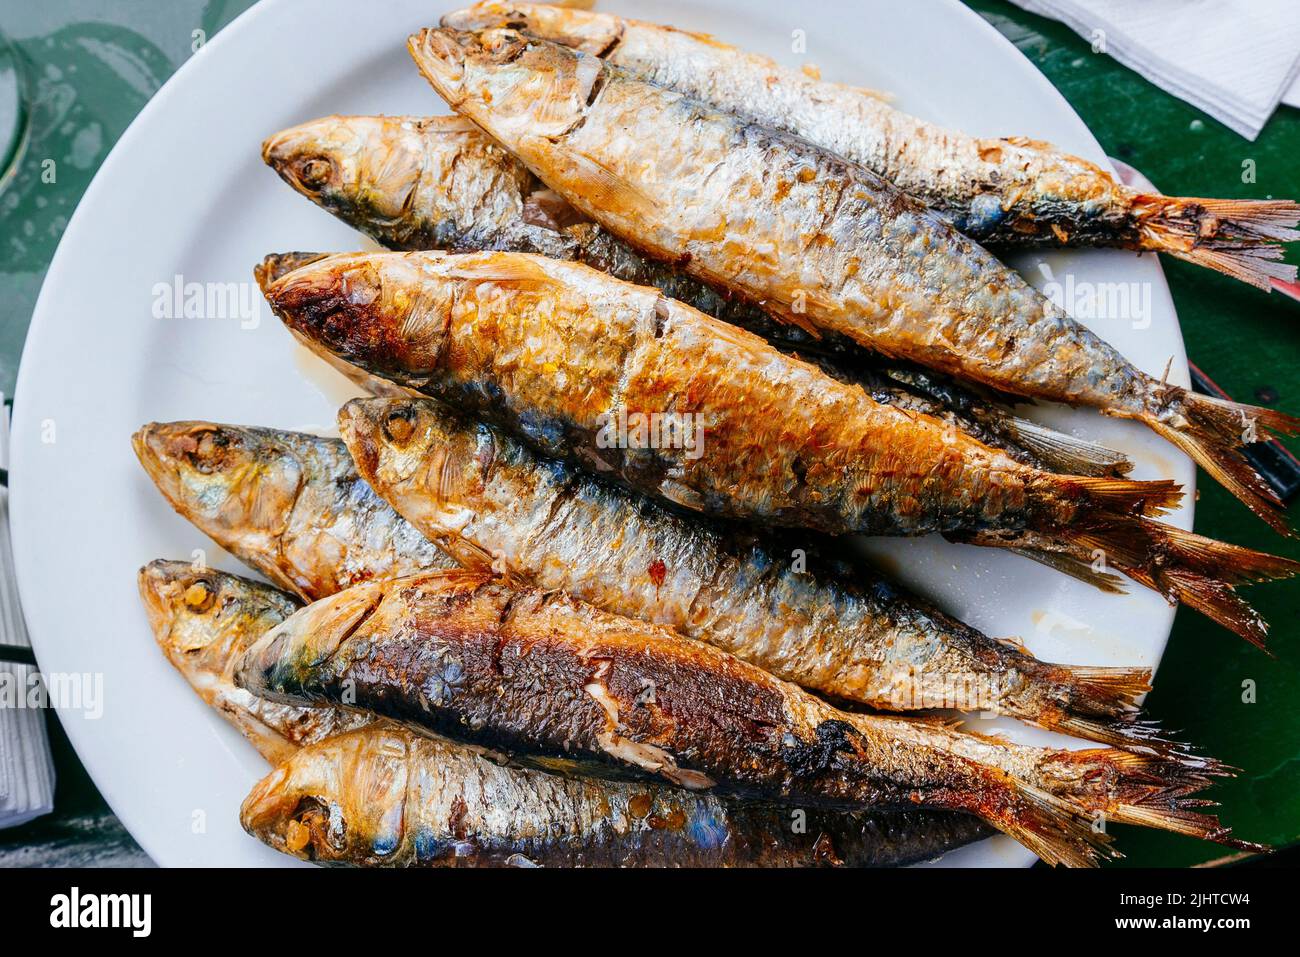 Asturian traditional food. Grilled sardines - Sardines barbecueing. Luanco, Gozón, Principality of Asturias, Spain, Europe Stock Photo